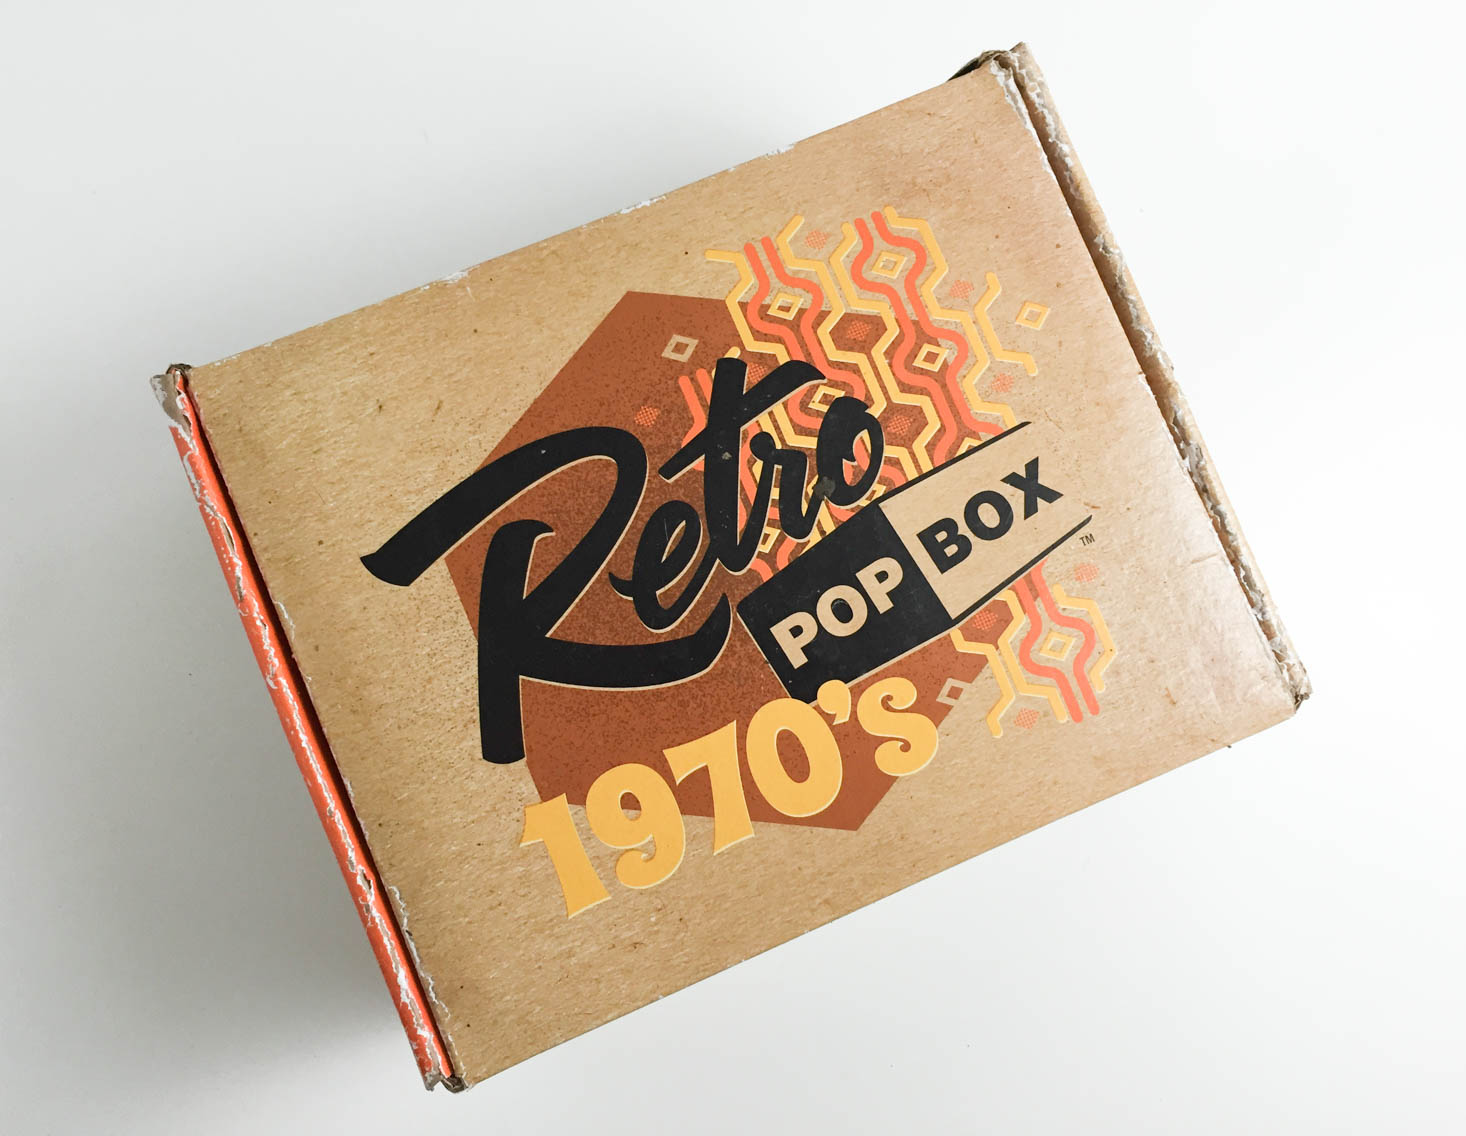 70s Retro Pop Box Subscription Review + Coupon- Aug 2016